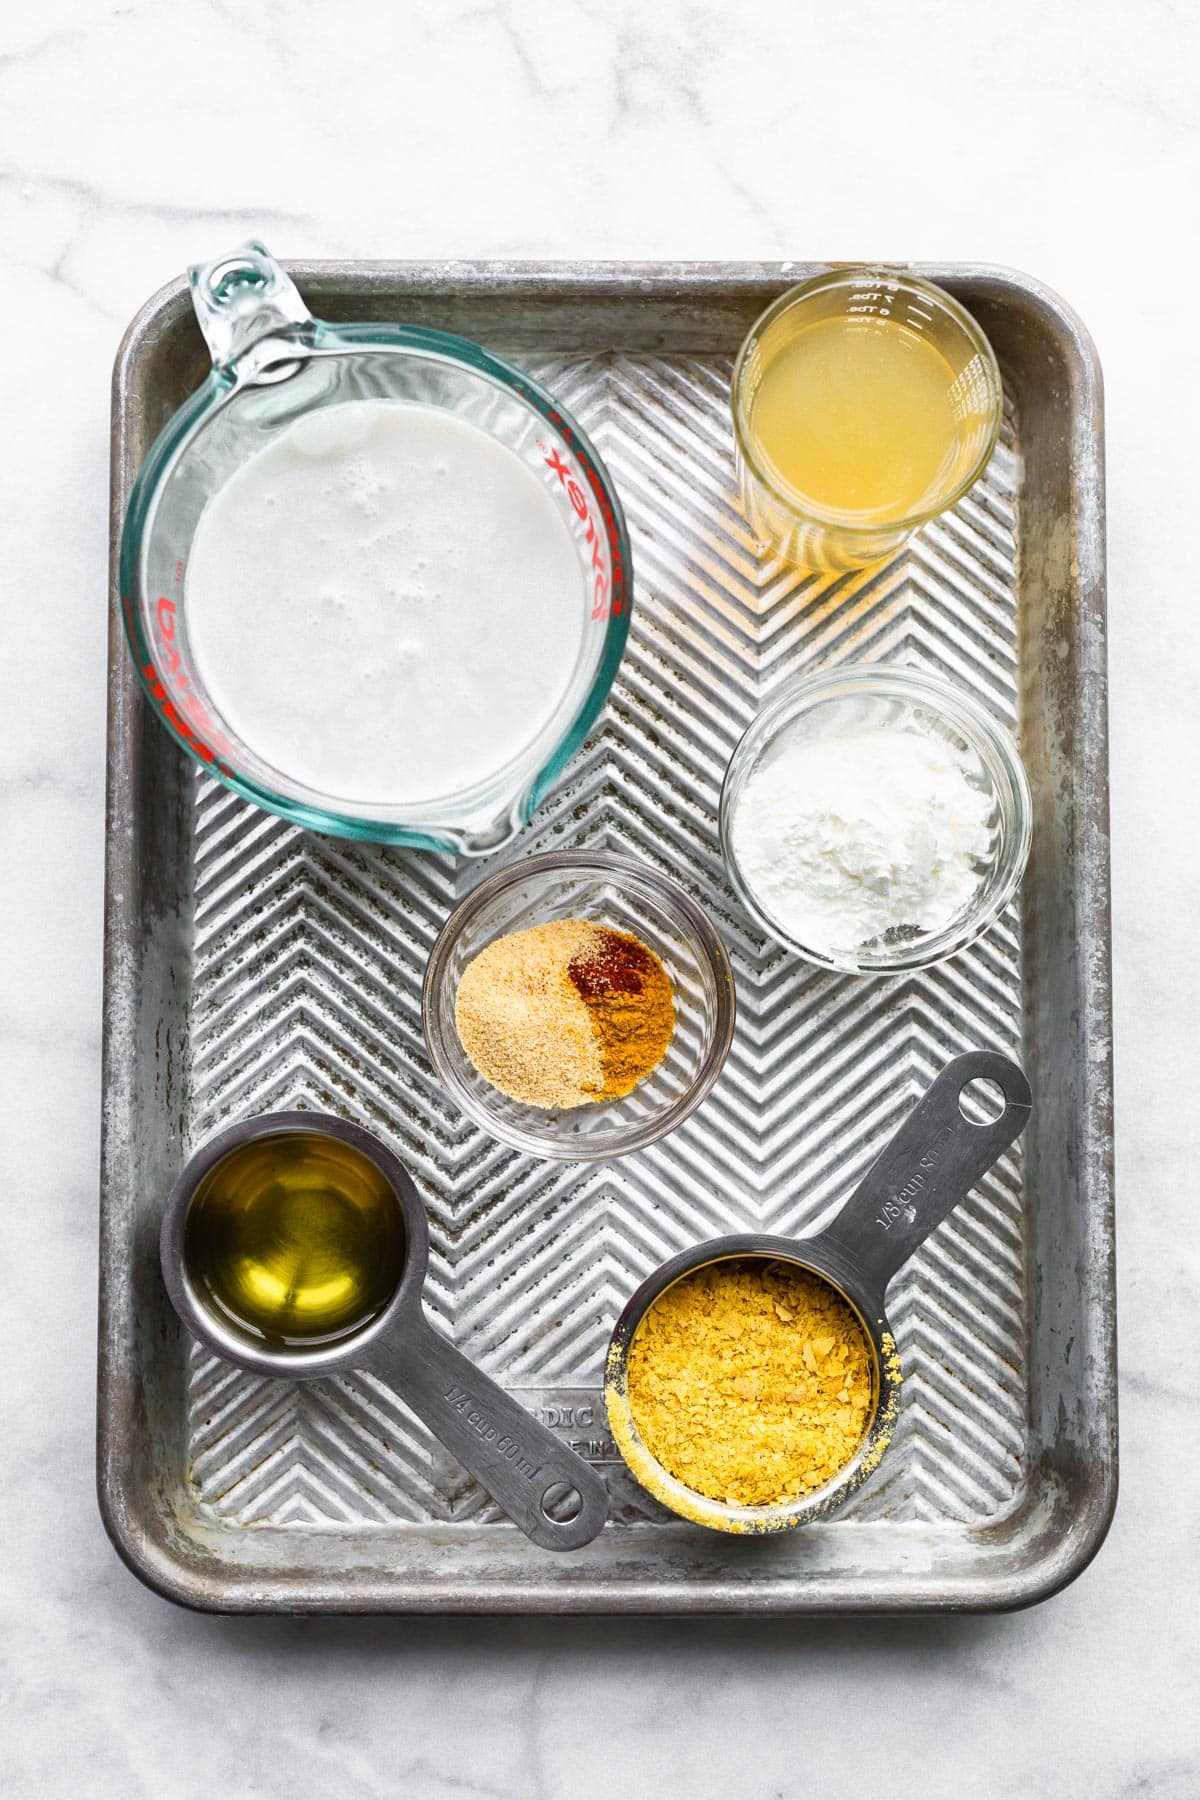 Bowls of ingredients to make vegan cheese sauce on a metal baking sheet.